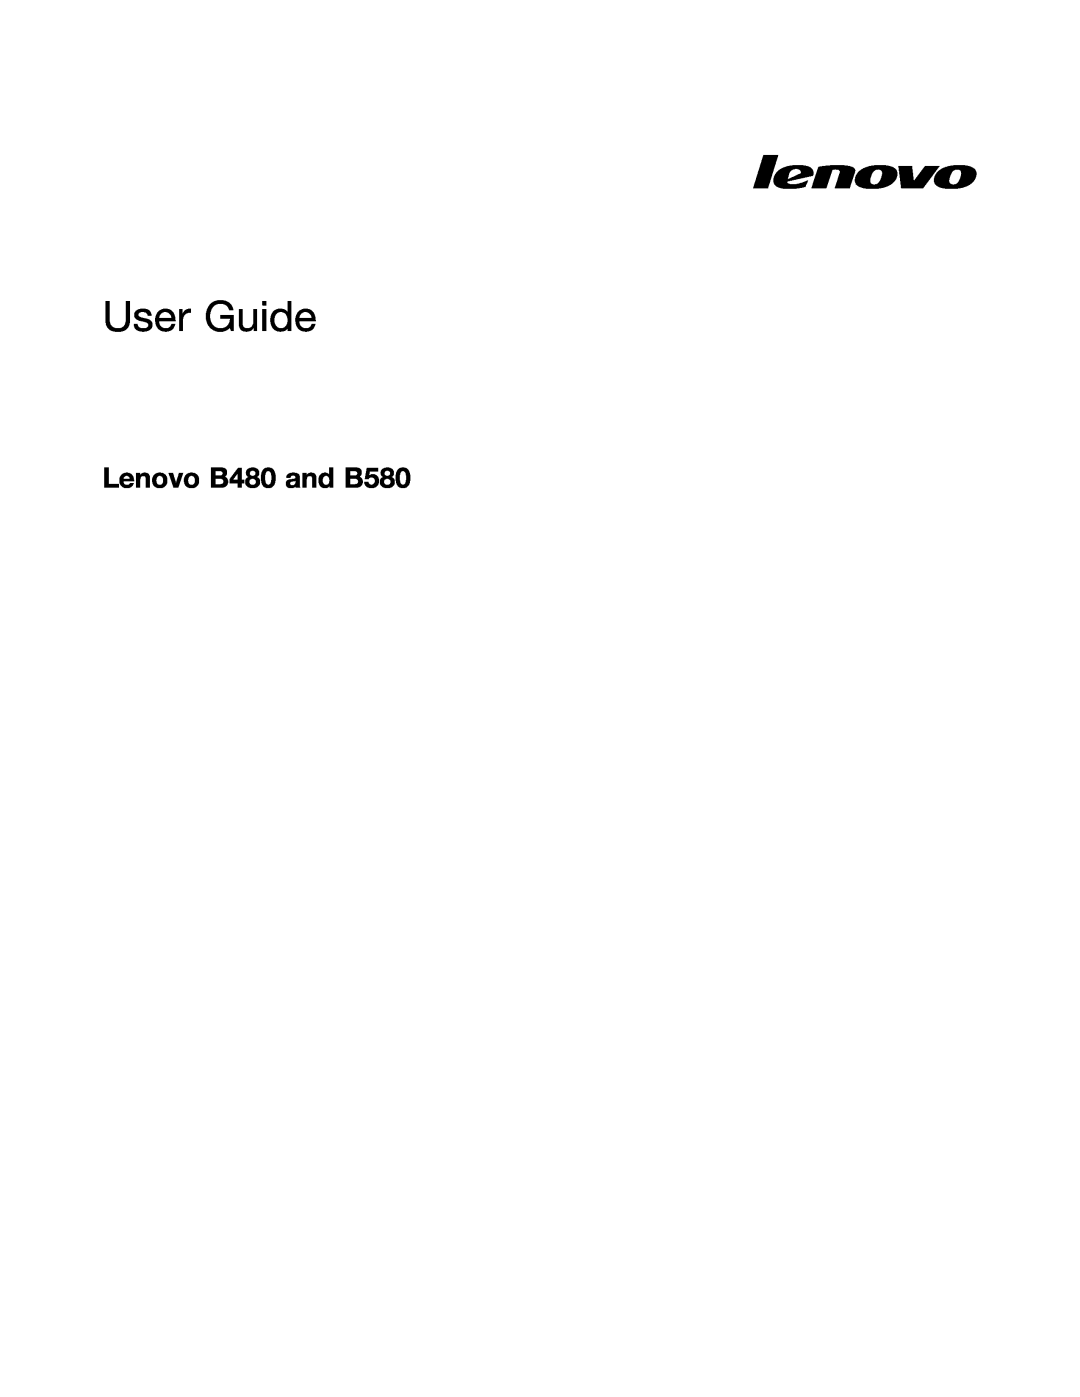 Lenovo manual Lenovo B480 and B580, User Guide 